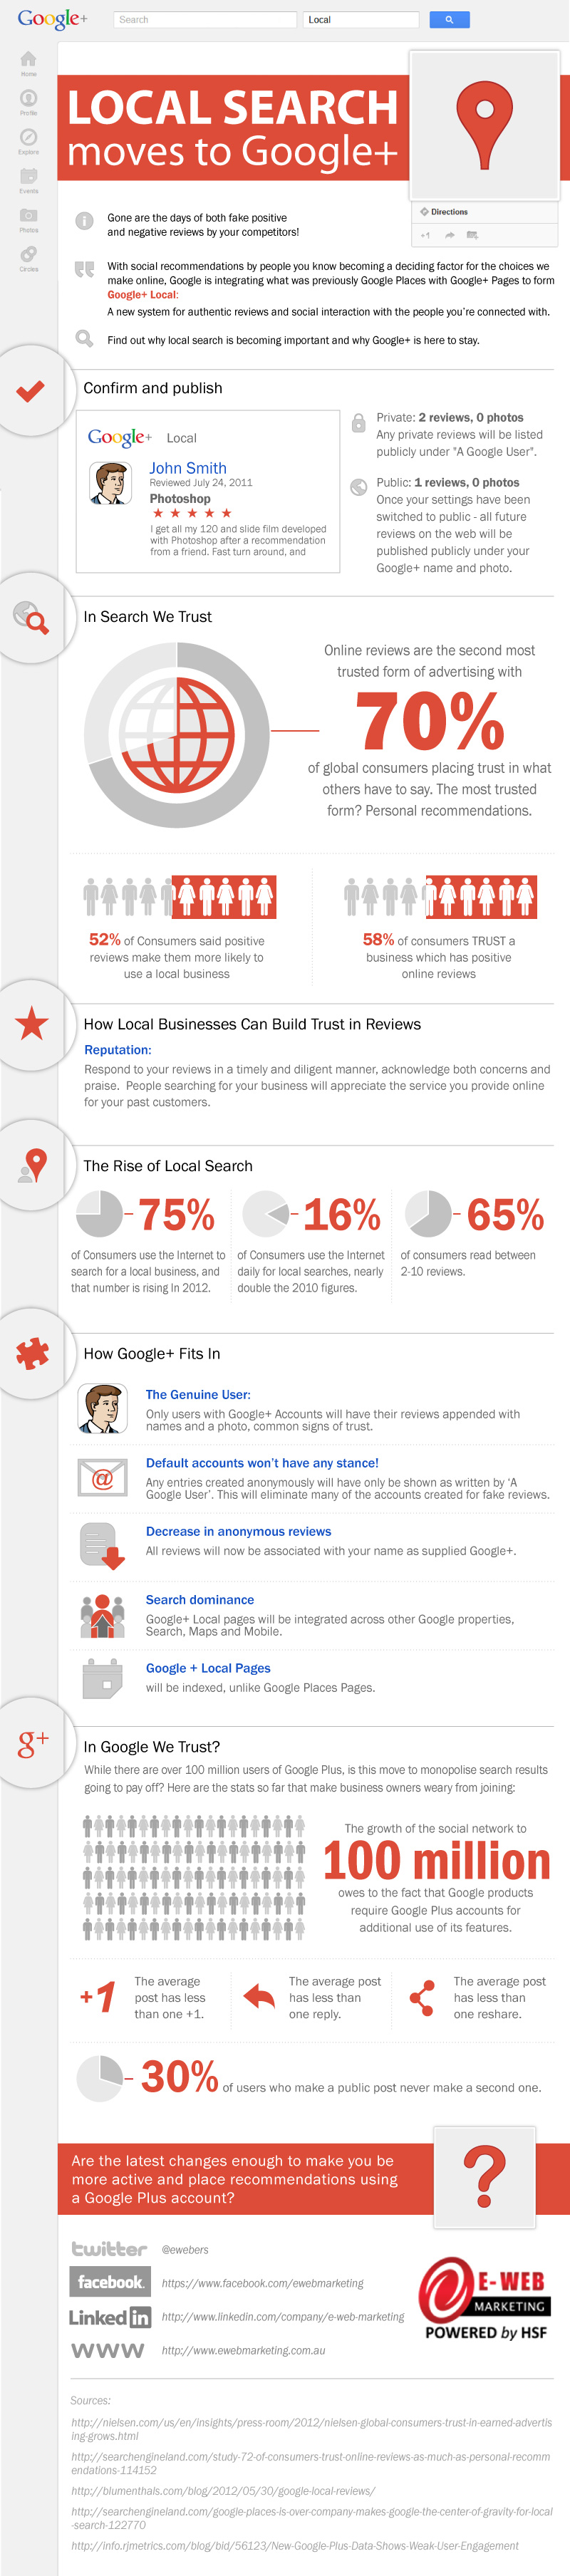 E-Web Marketing's Google+ Local Search Infographic